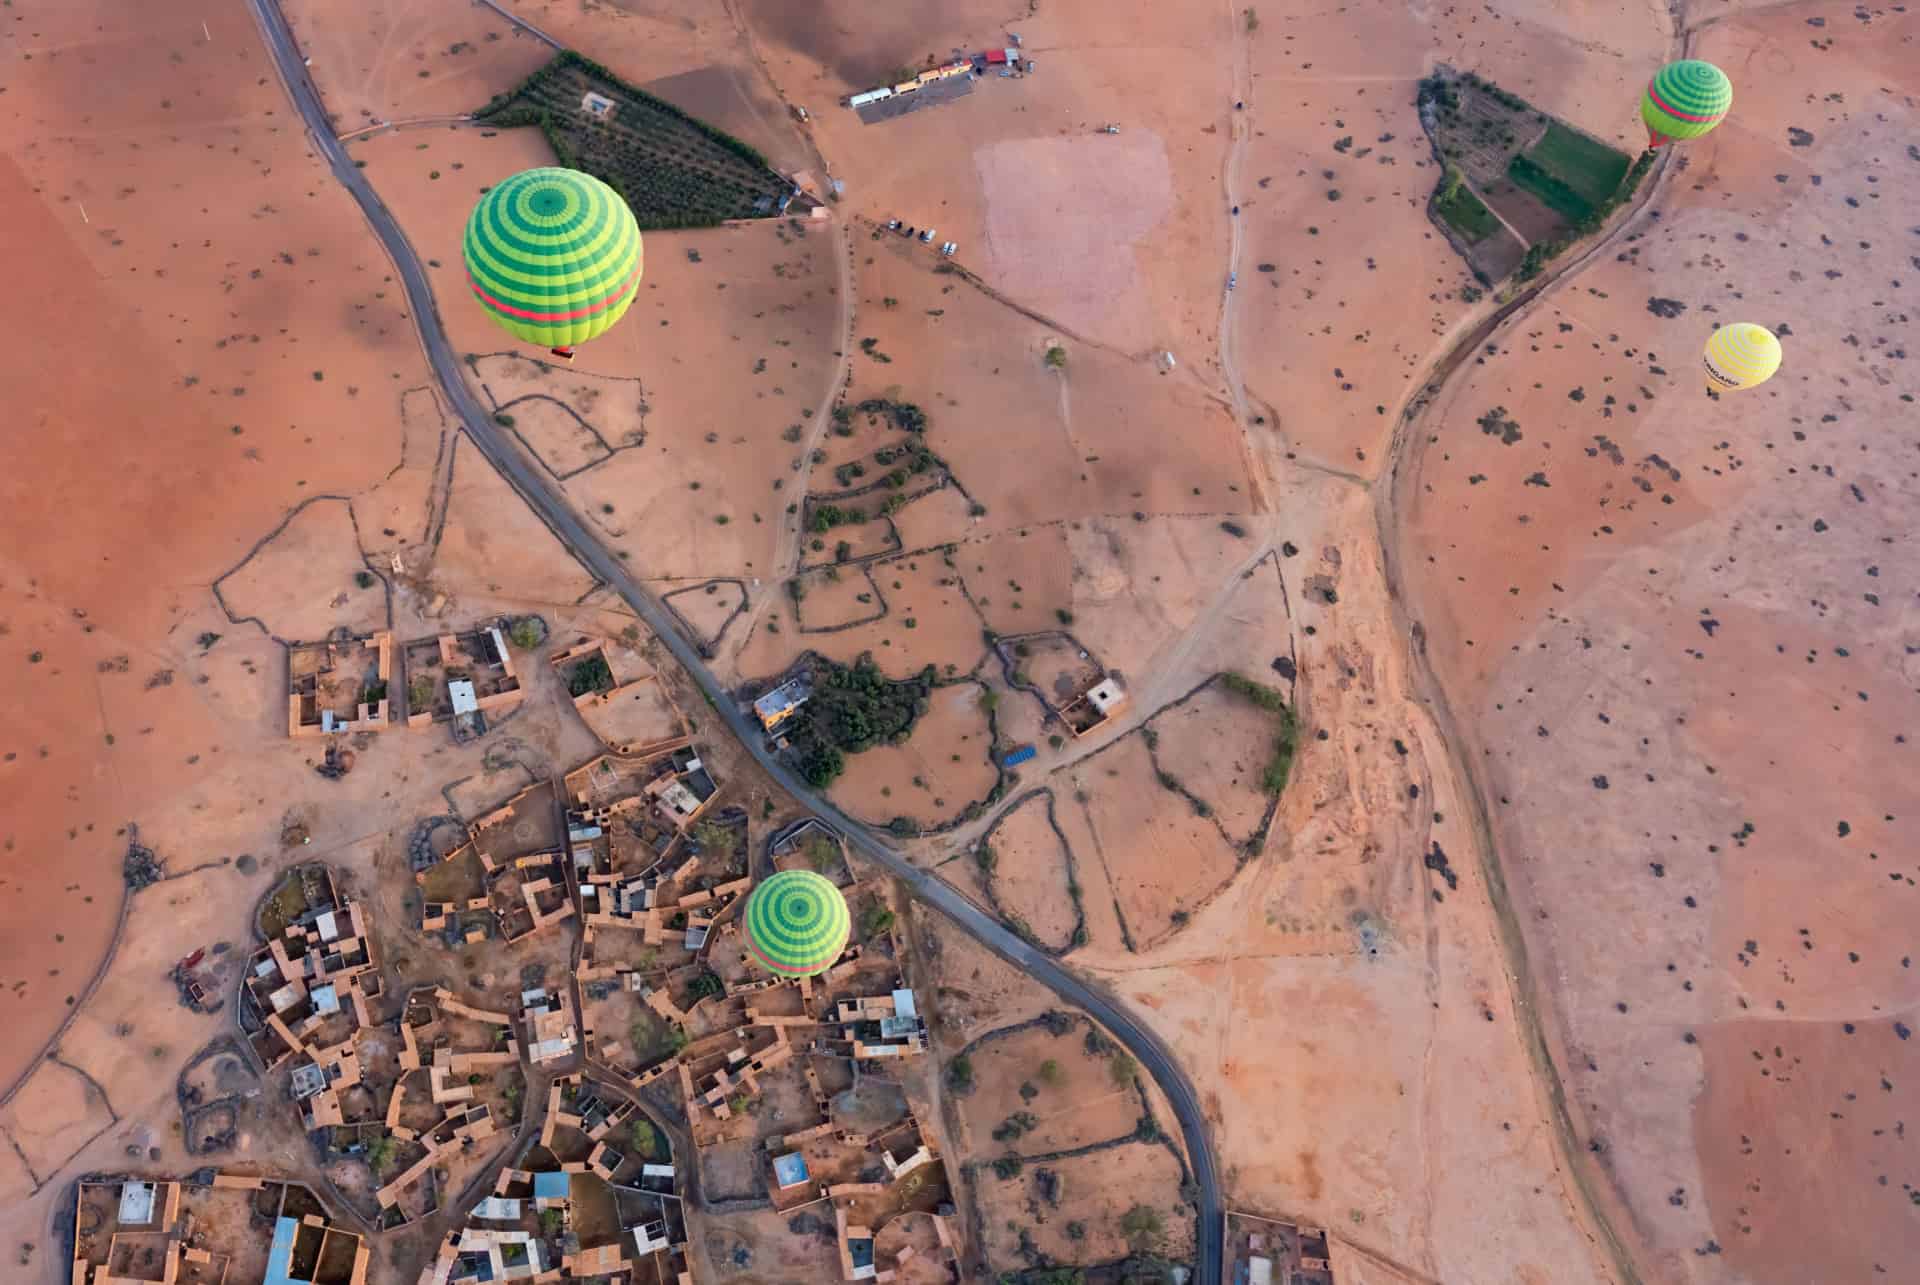 comment se passe vol montgolfiere marrakech